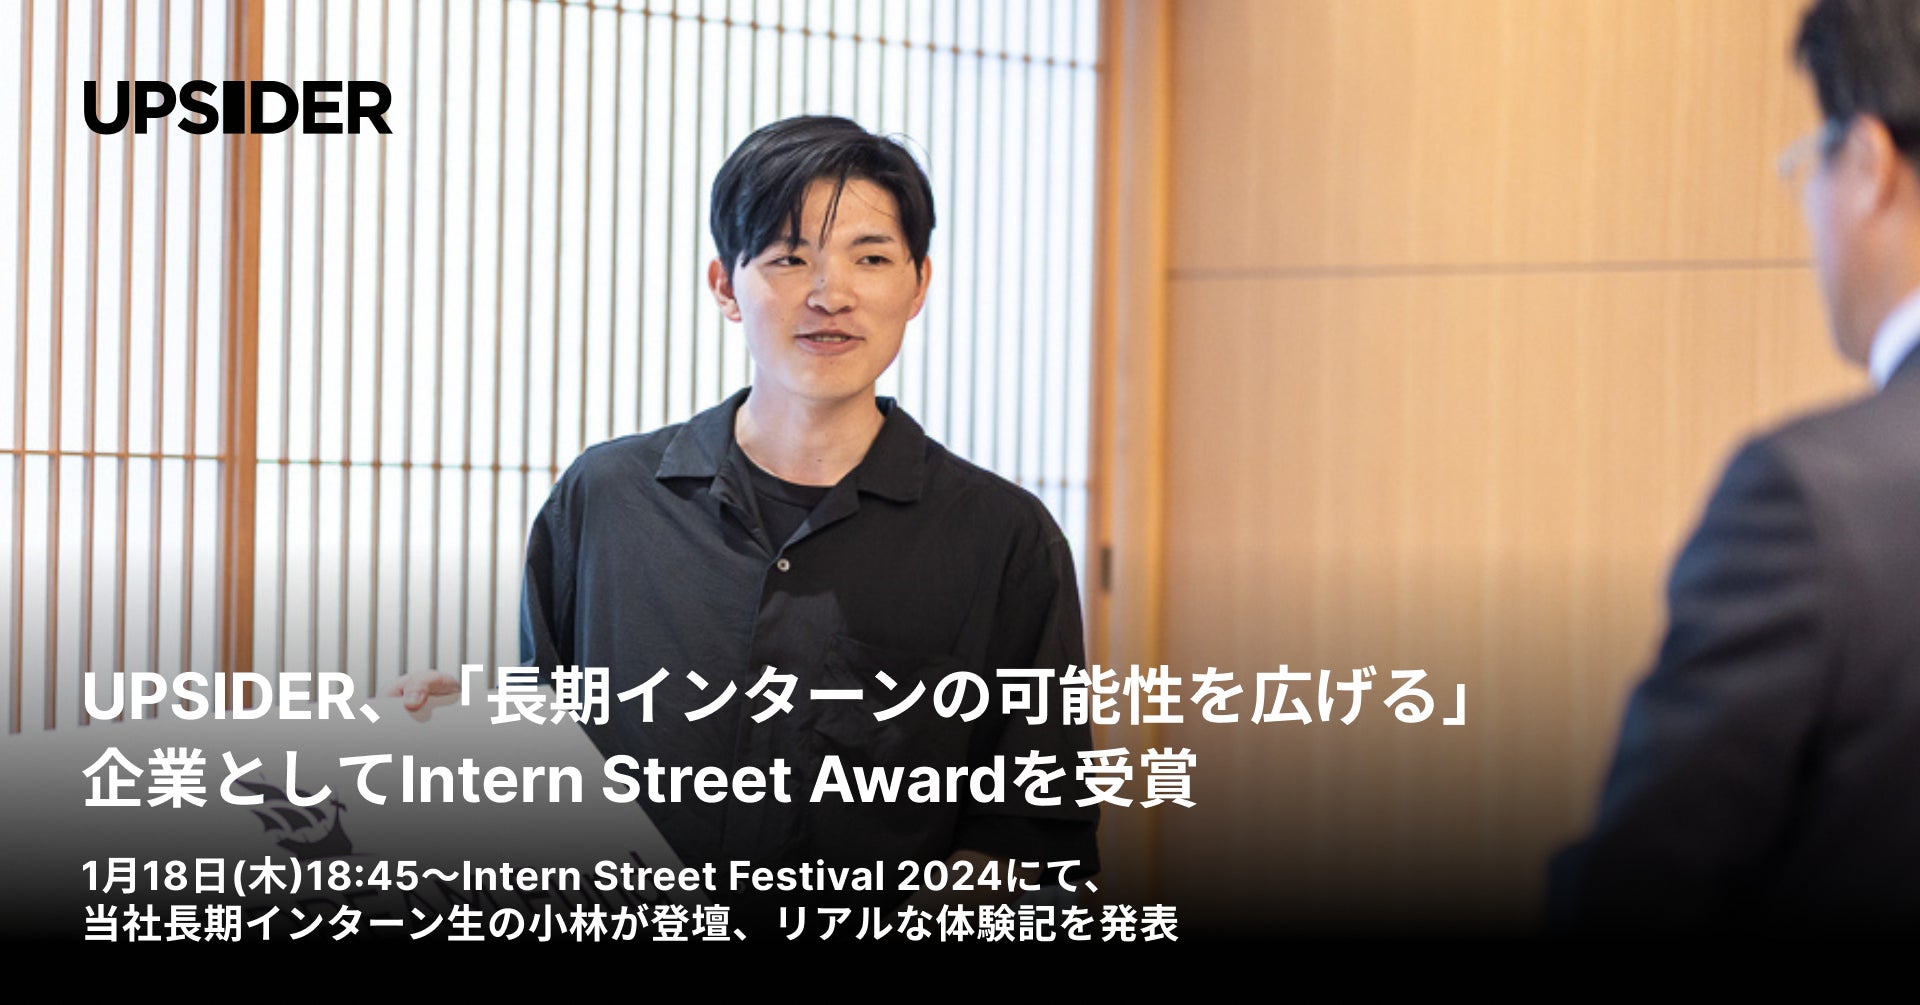 UPSIDER、「長期インターンの可能性を広げる」企業としてIntern Street Awardを受賞